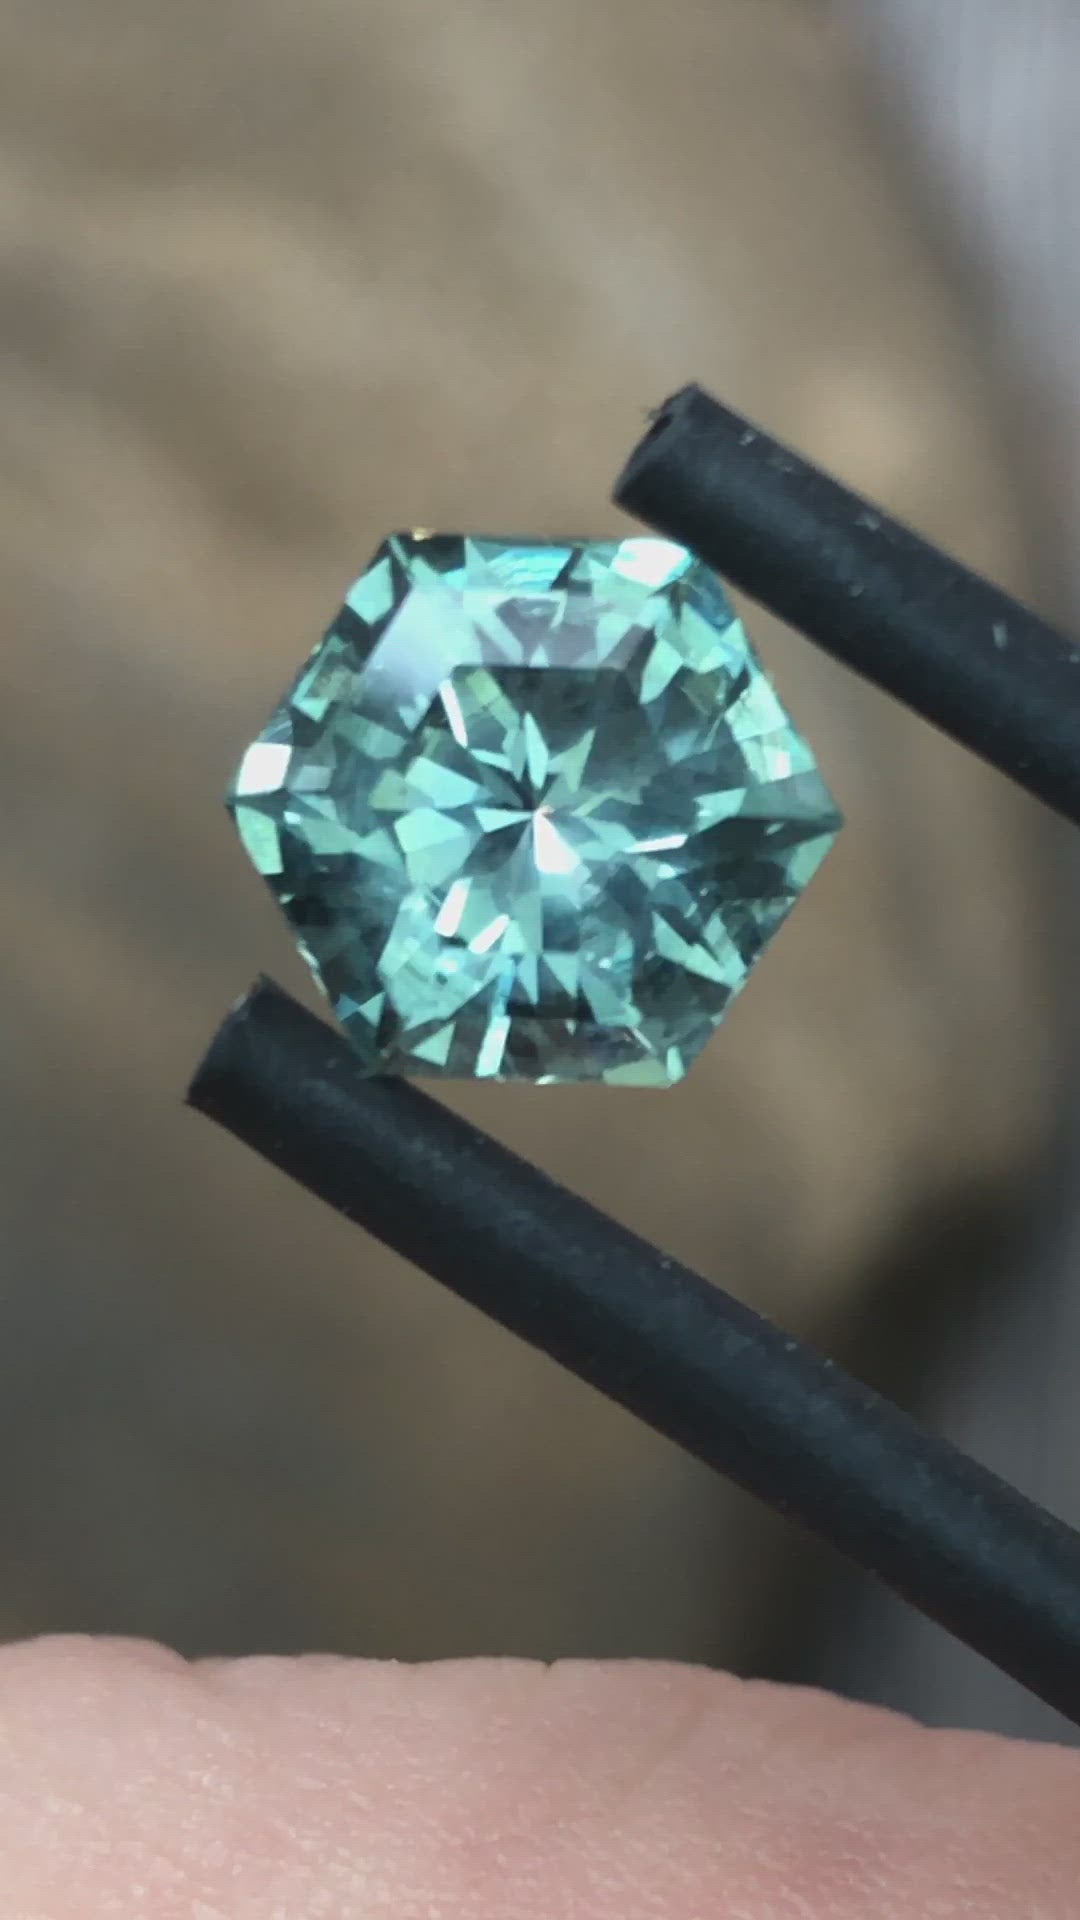 Montana Sapphire Hexagon 7.8x6.7mm, 1.66 Carats - Blue Green - Precision Cut